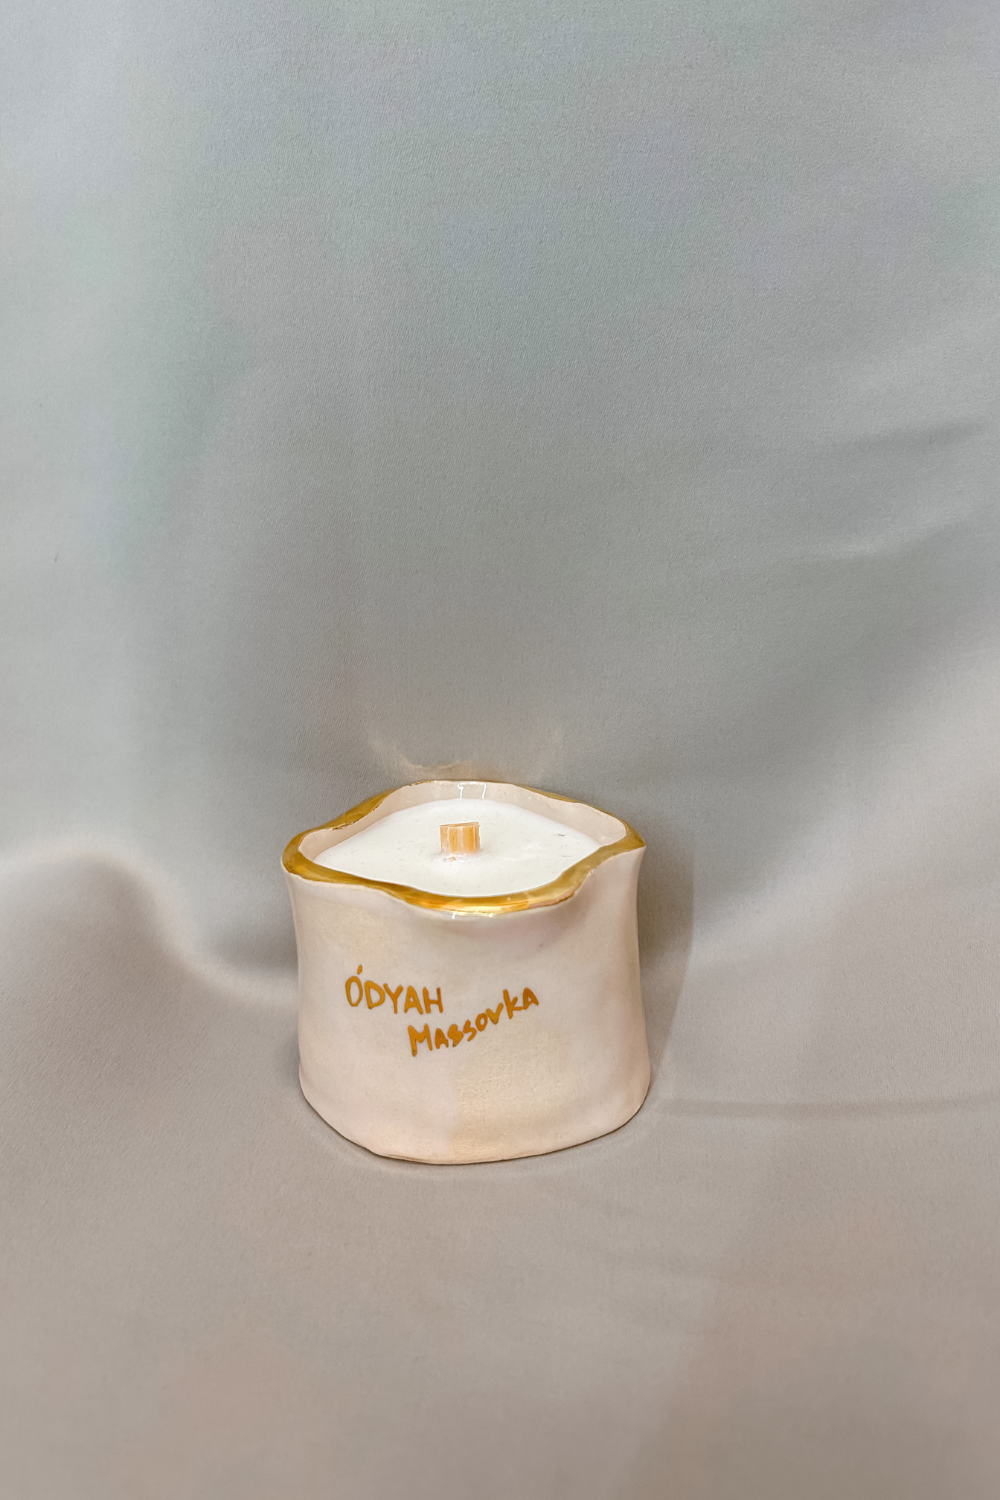 Candle - (Gardenia and tuberose and tuberose) ÓDYAH (Massovka)